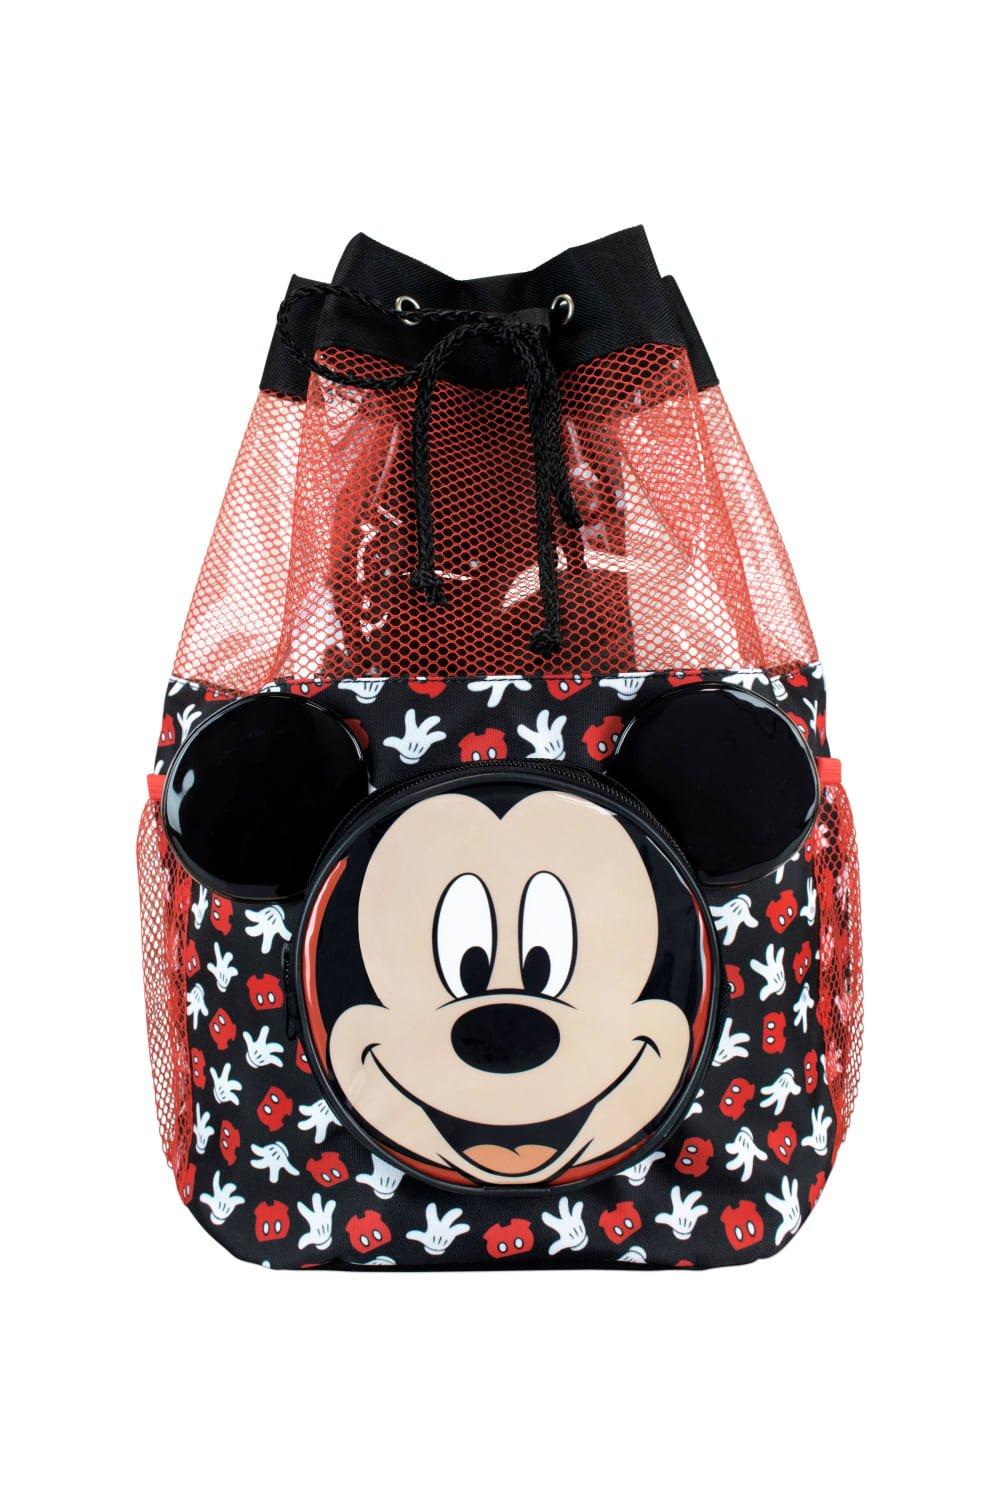 Сумка для плавания с Микки Маусом Disney, черный рюкзак с мультипликационным изображением диснея плюшевая школьная сумка с микки маусом минни винни пухом для детского сада детские школ